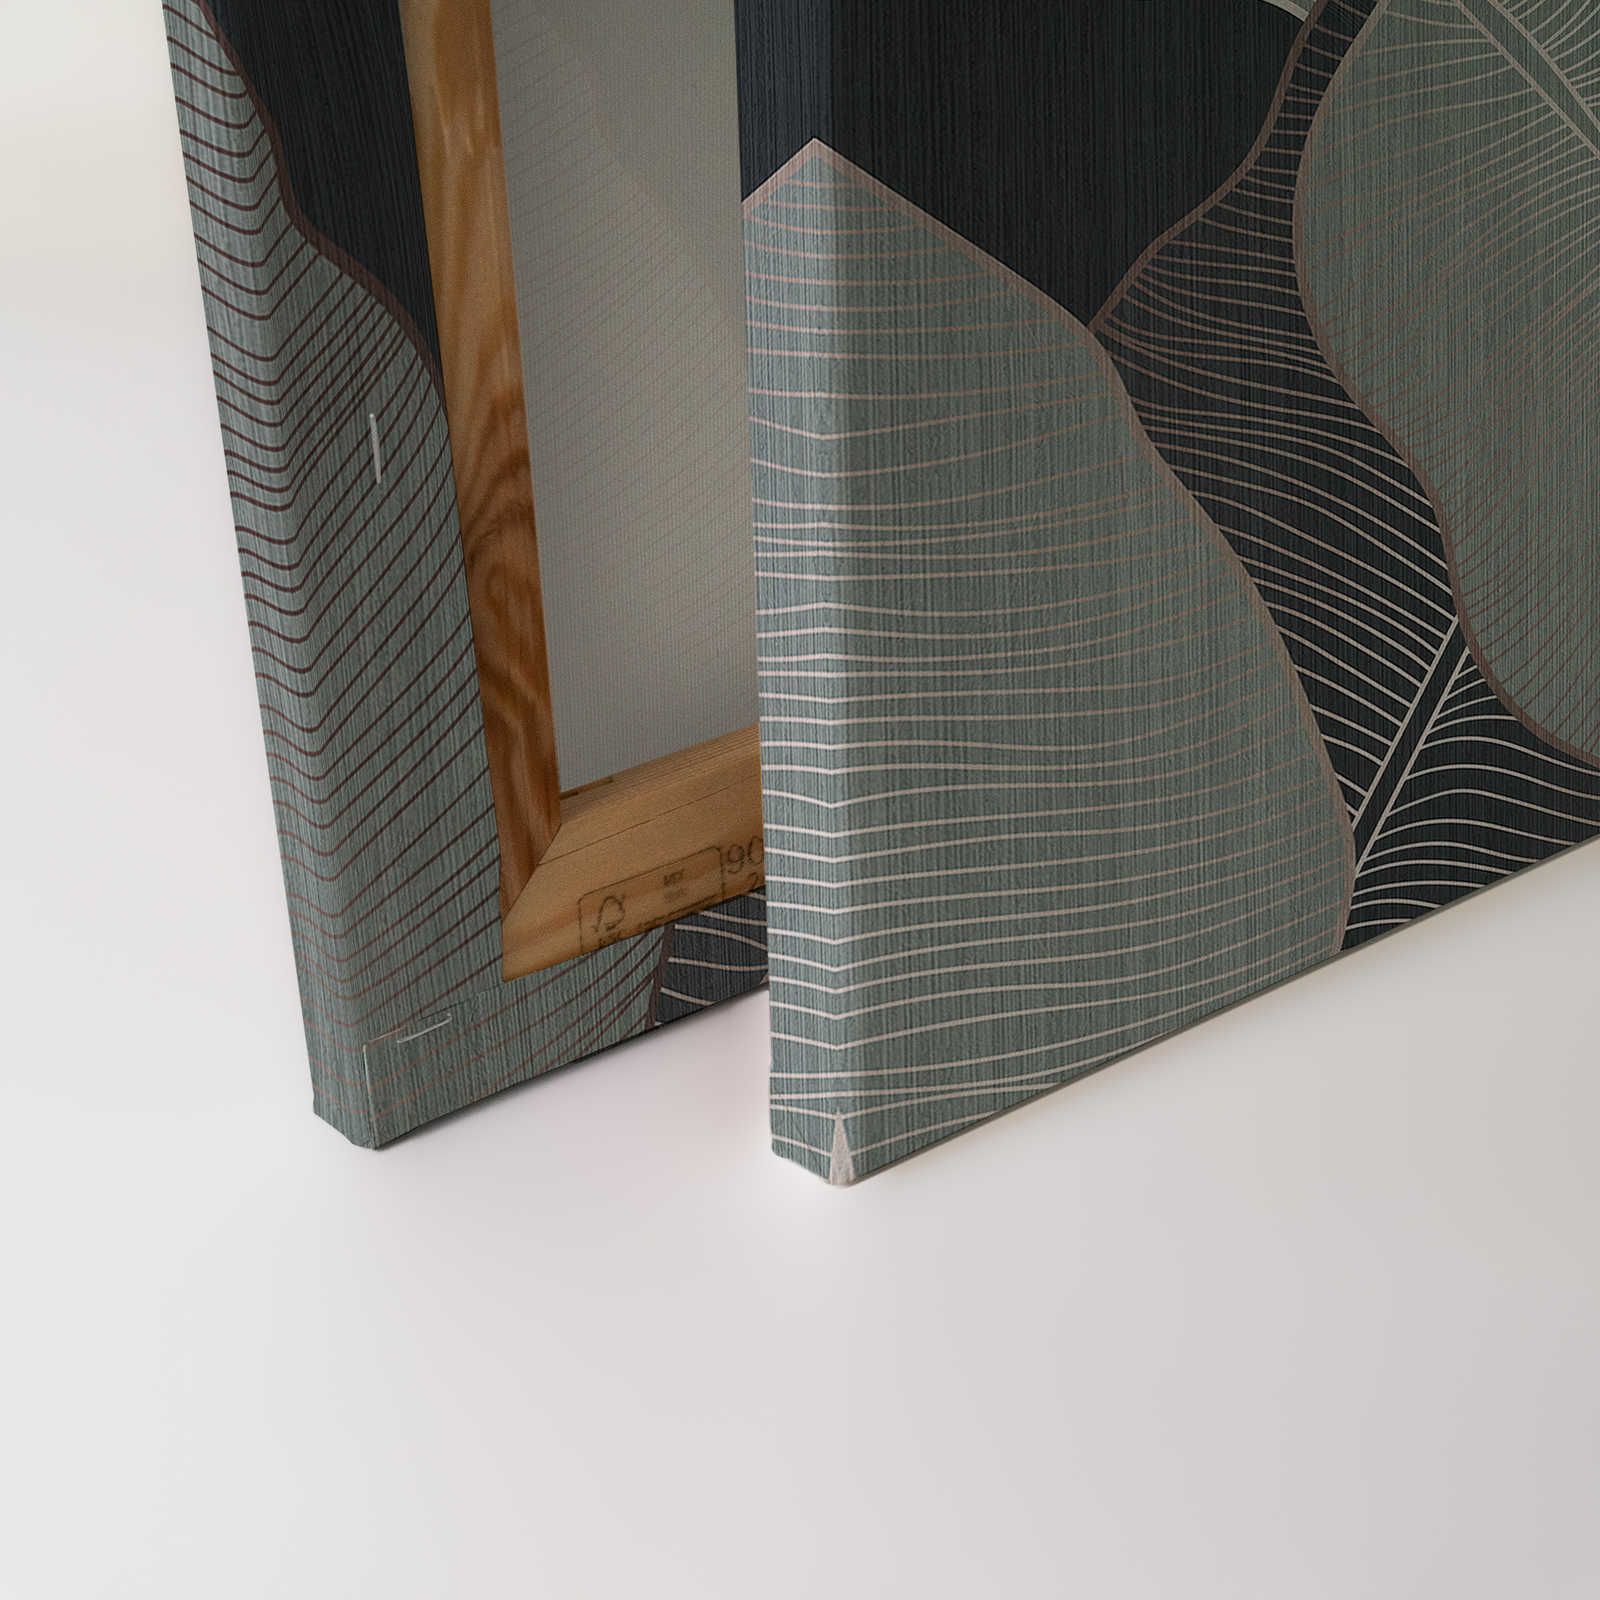             Under Cover 1 - Toile Feuille de palmier Gris & Vert pâle style dessin - 0,90 m x 0,60 m
        